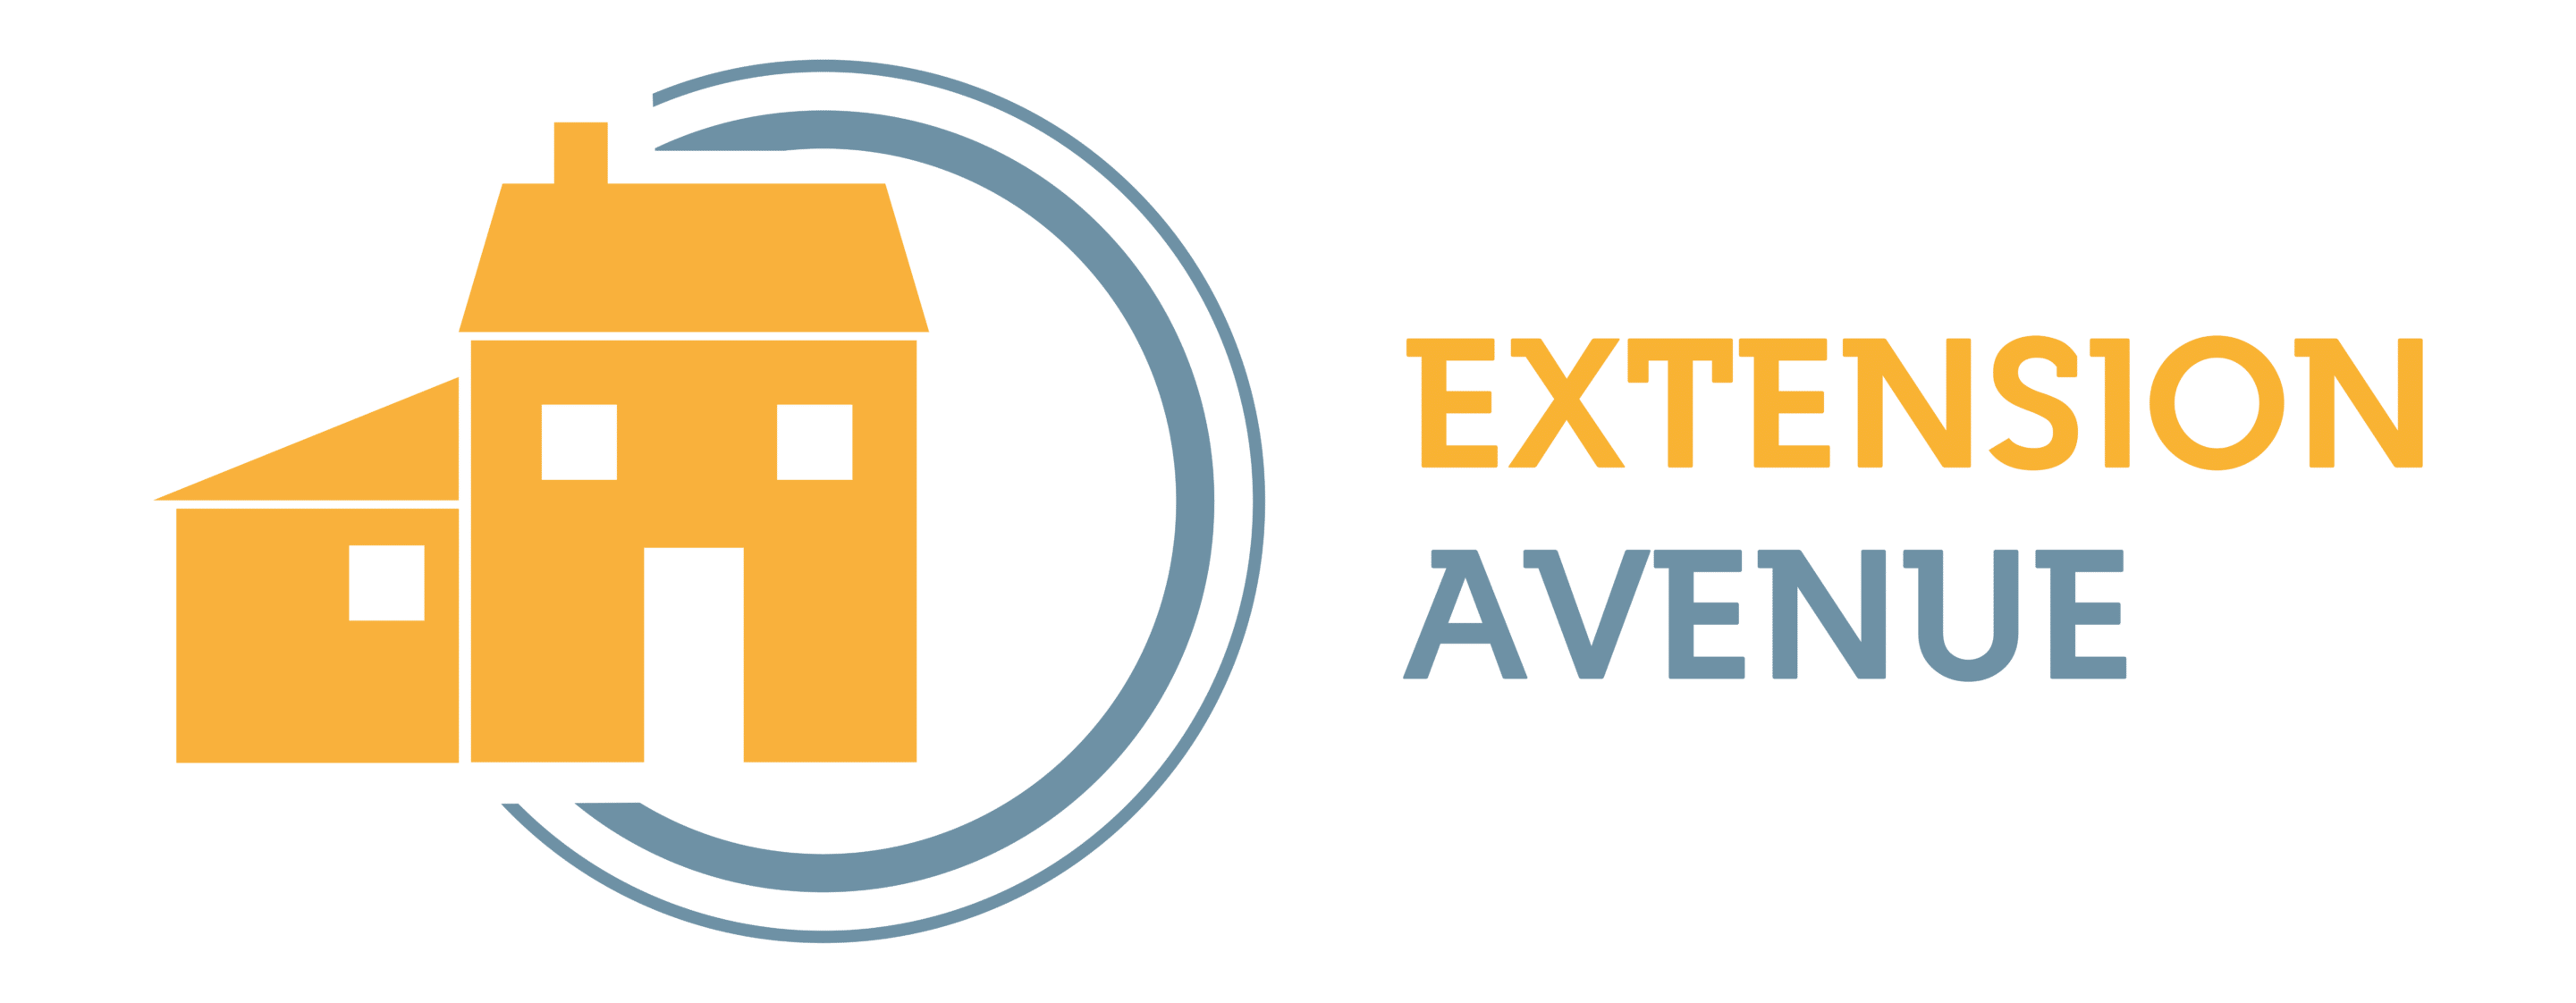 Extension Avenue : tout savoir sur l'agrandissement d'une maison